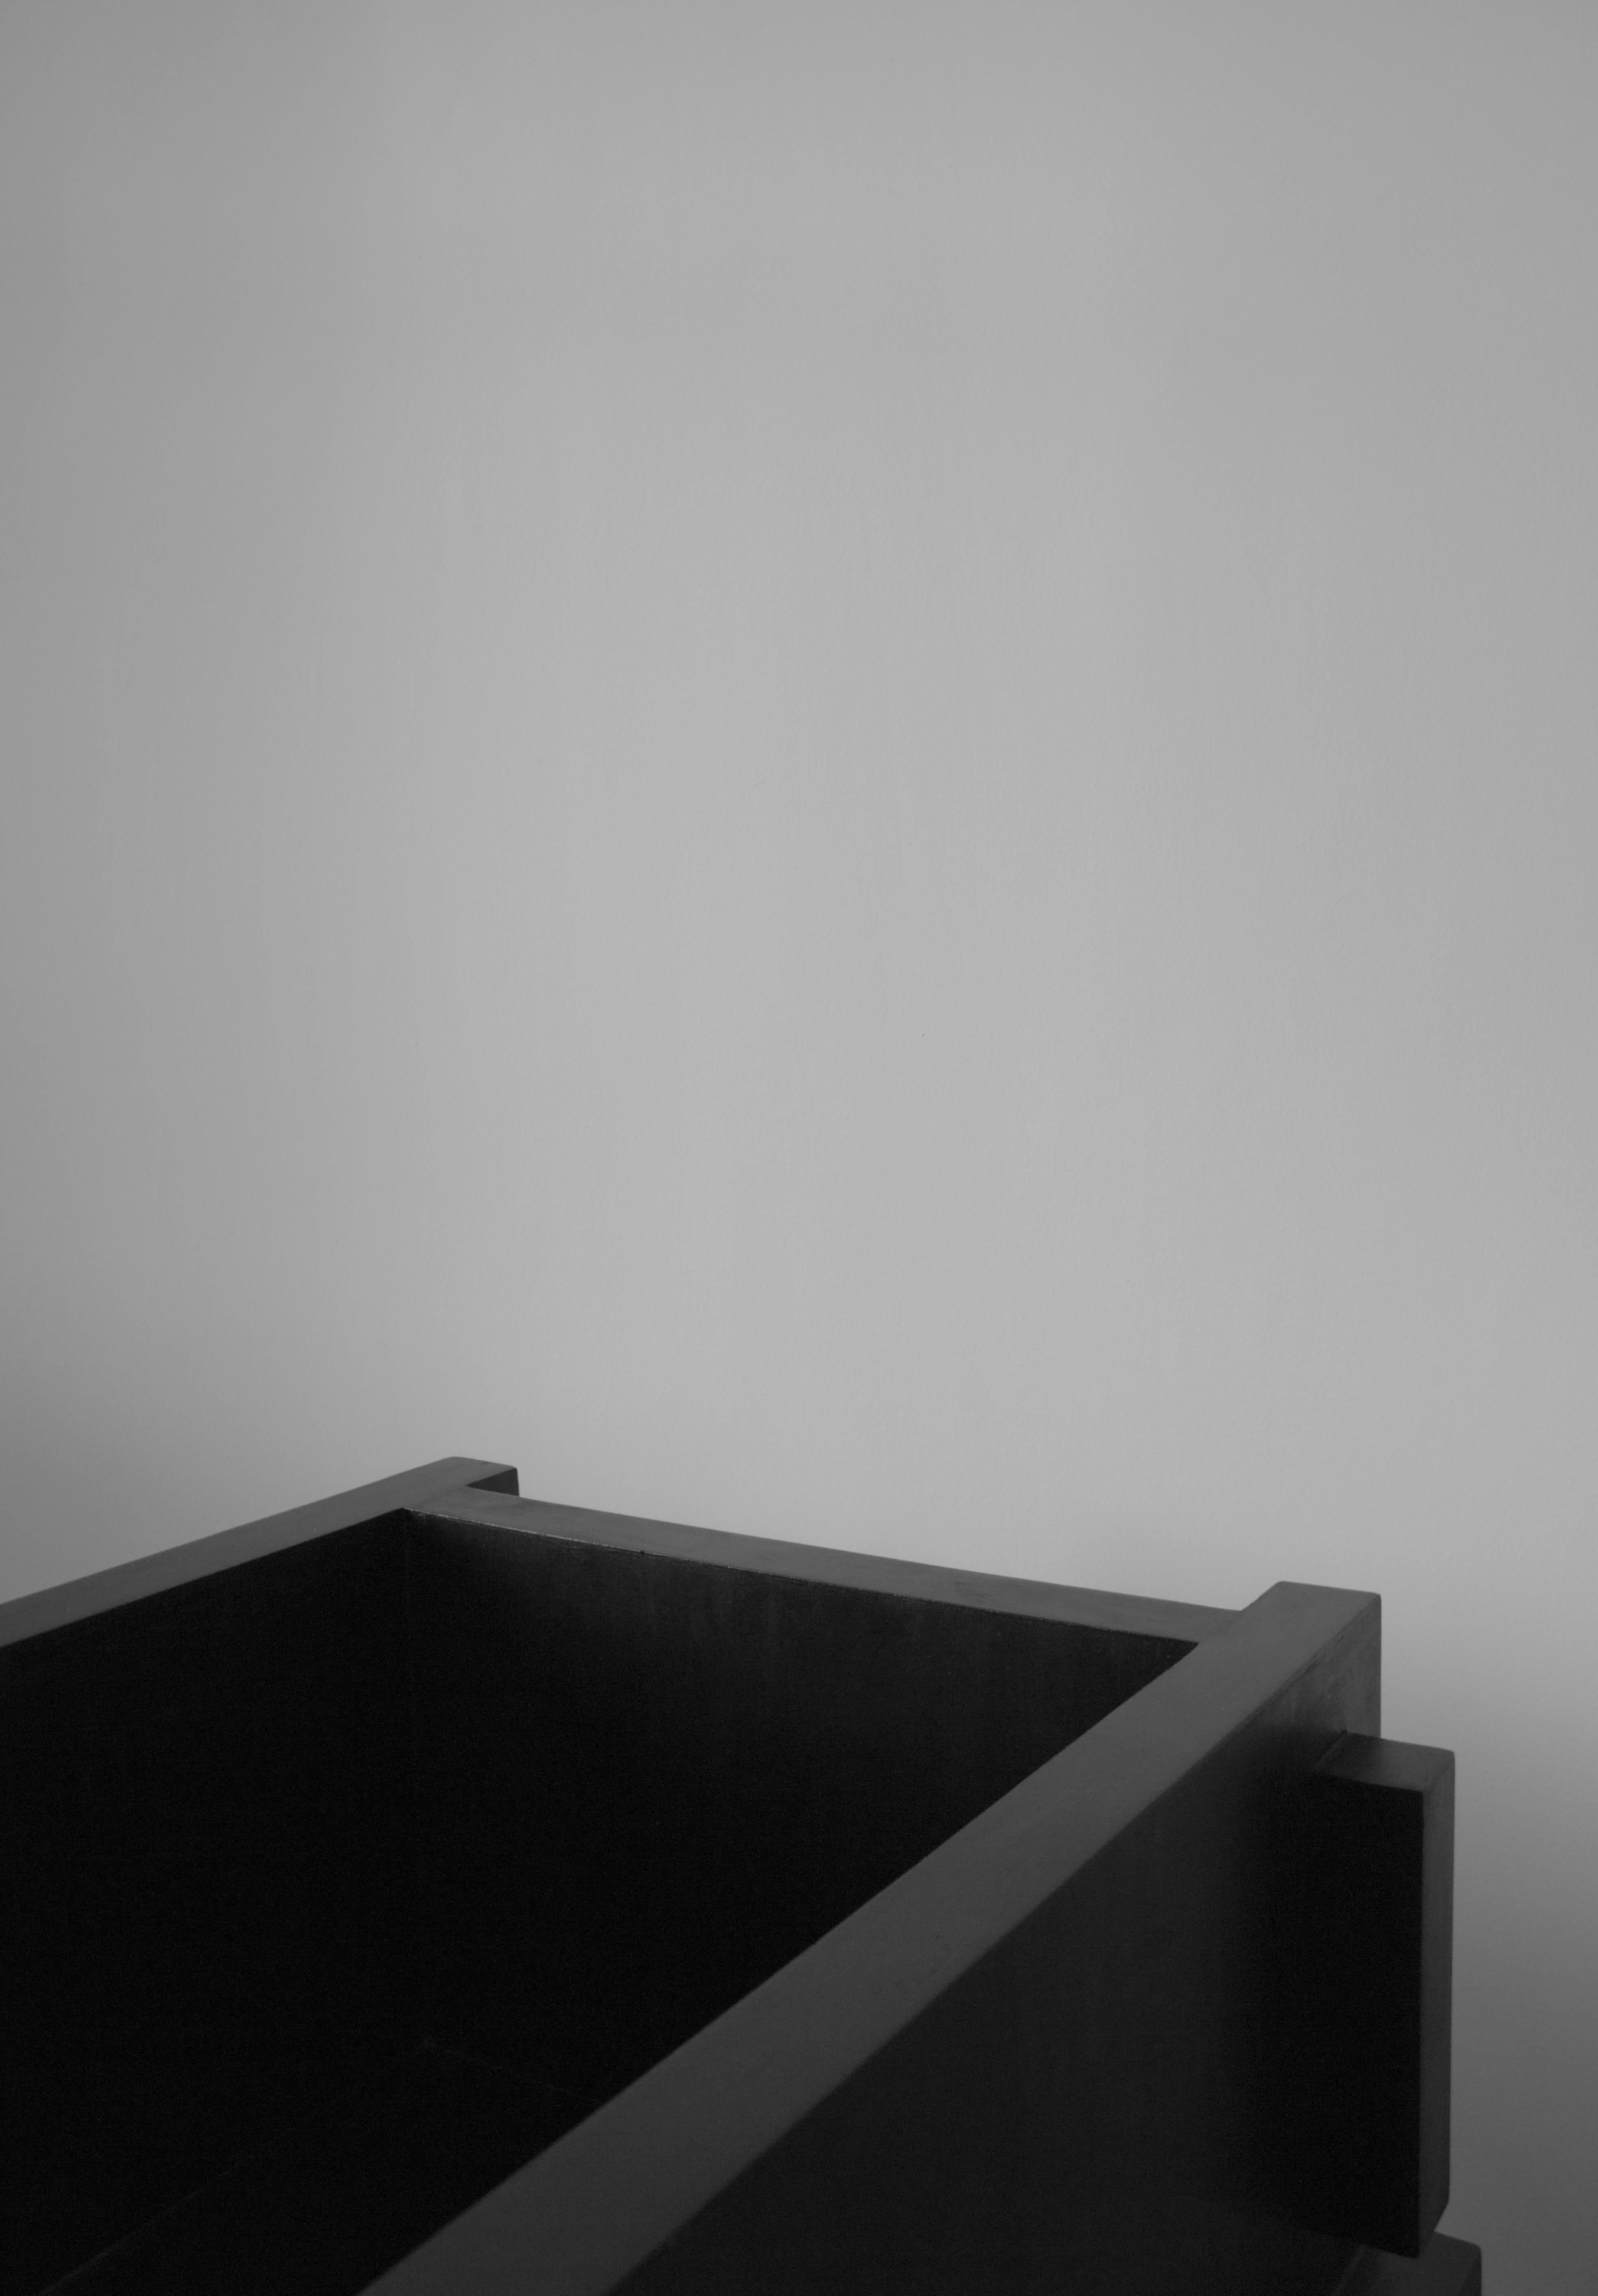 Loungesessel ItooRaba von Sizar Alexis
Abmessungen: Länge 60 cm, Breite 60 cm,
Höhe 70cm, Sitzhöhe: 37cm
Erhältlich in schwarz, weiß und Kiefer natur gebeizt
Signierte Stücke.

Eine Möbelserie, die sich an geometrischen Formen orientiert.